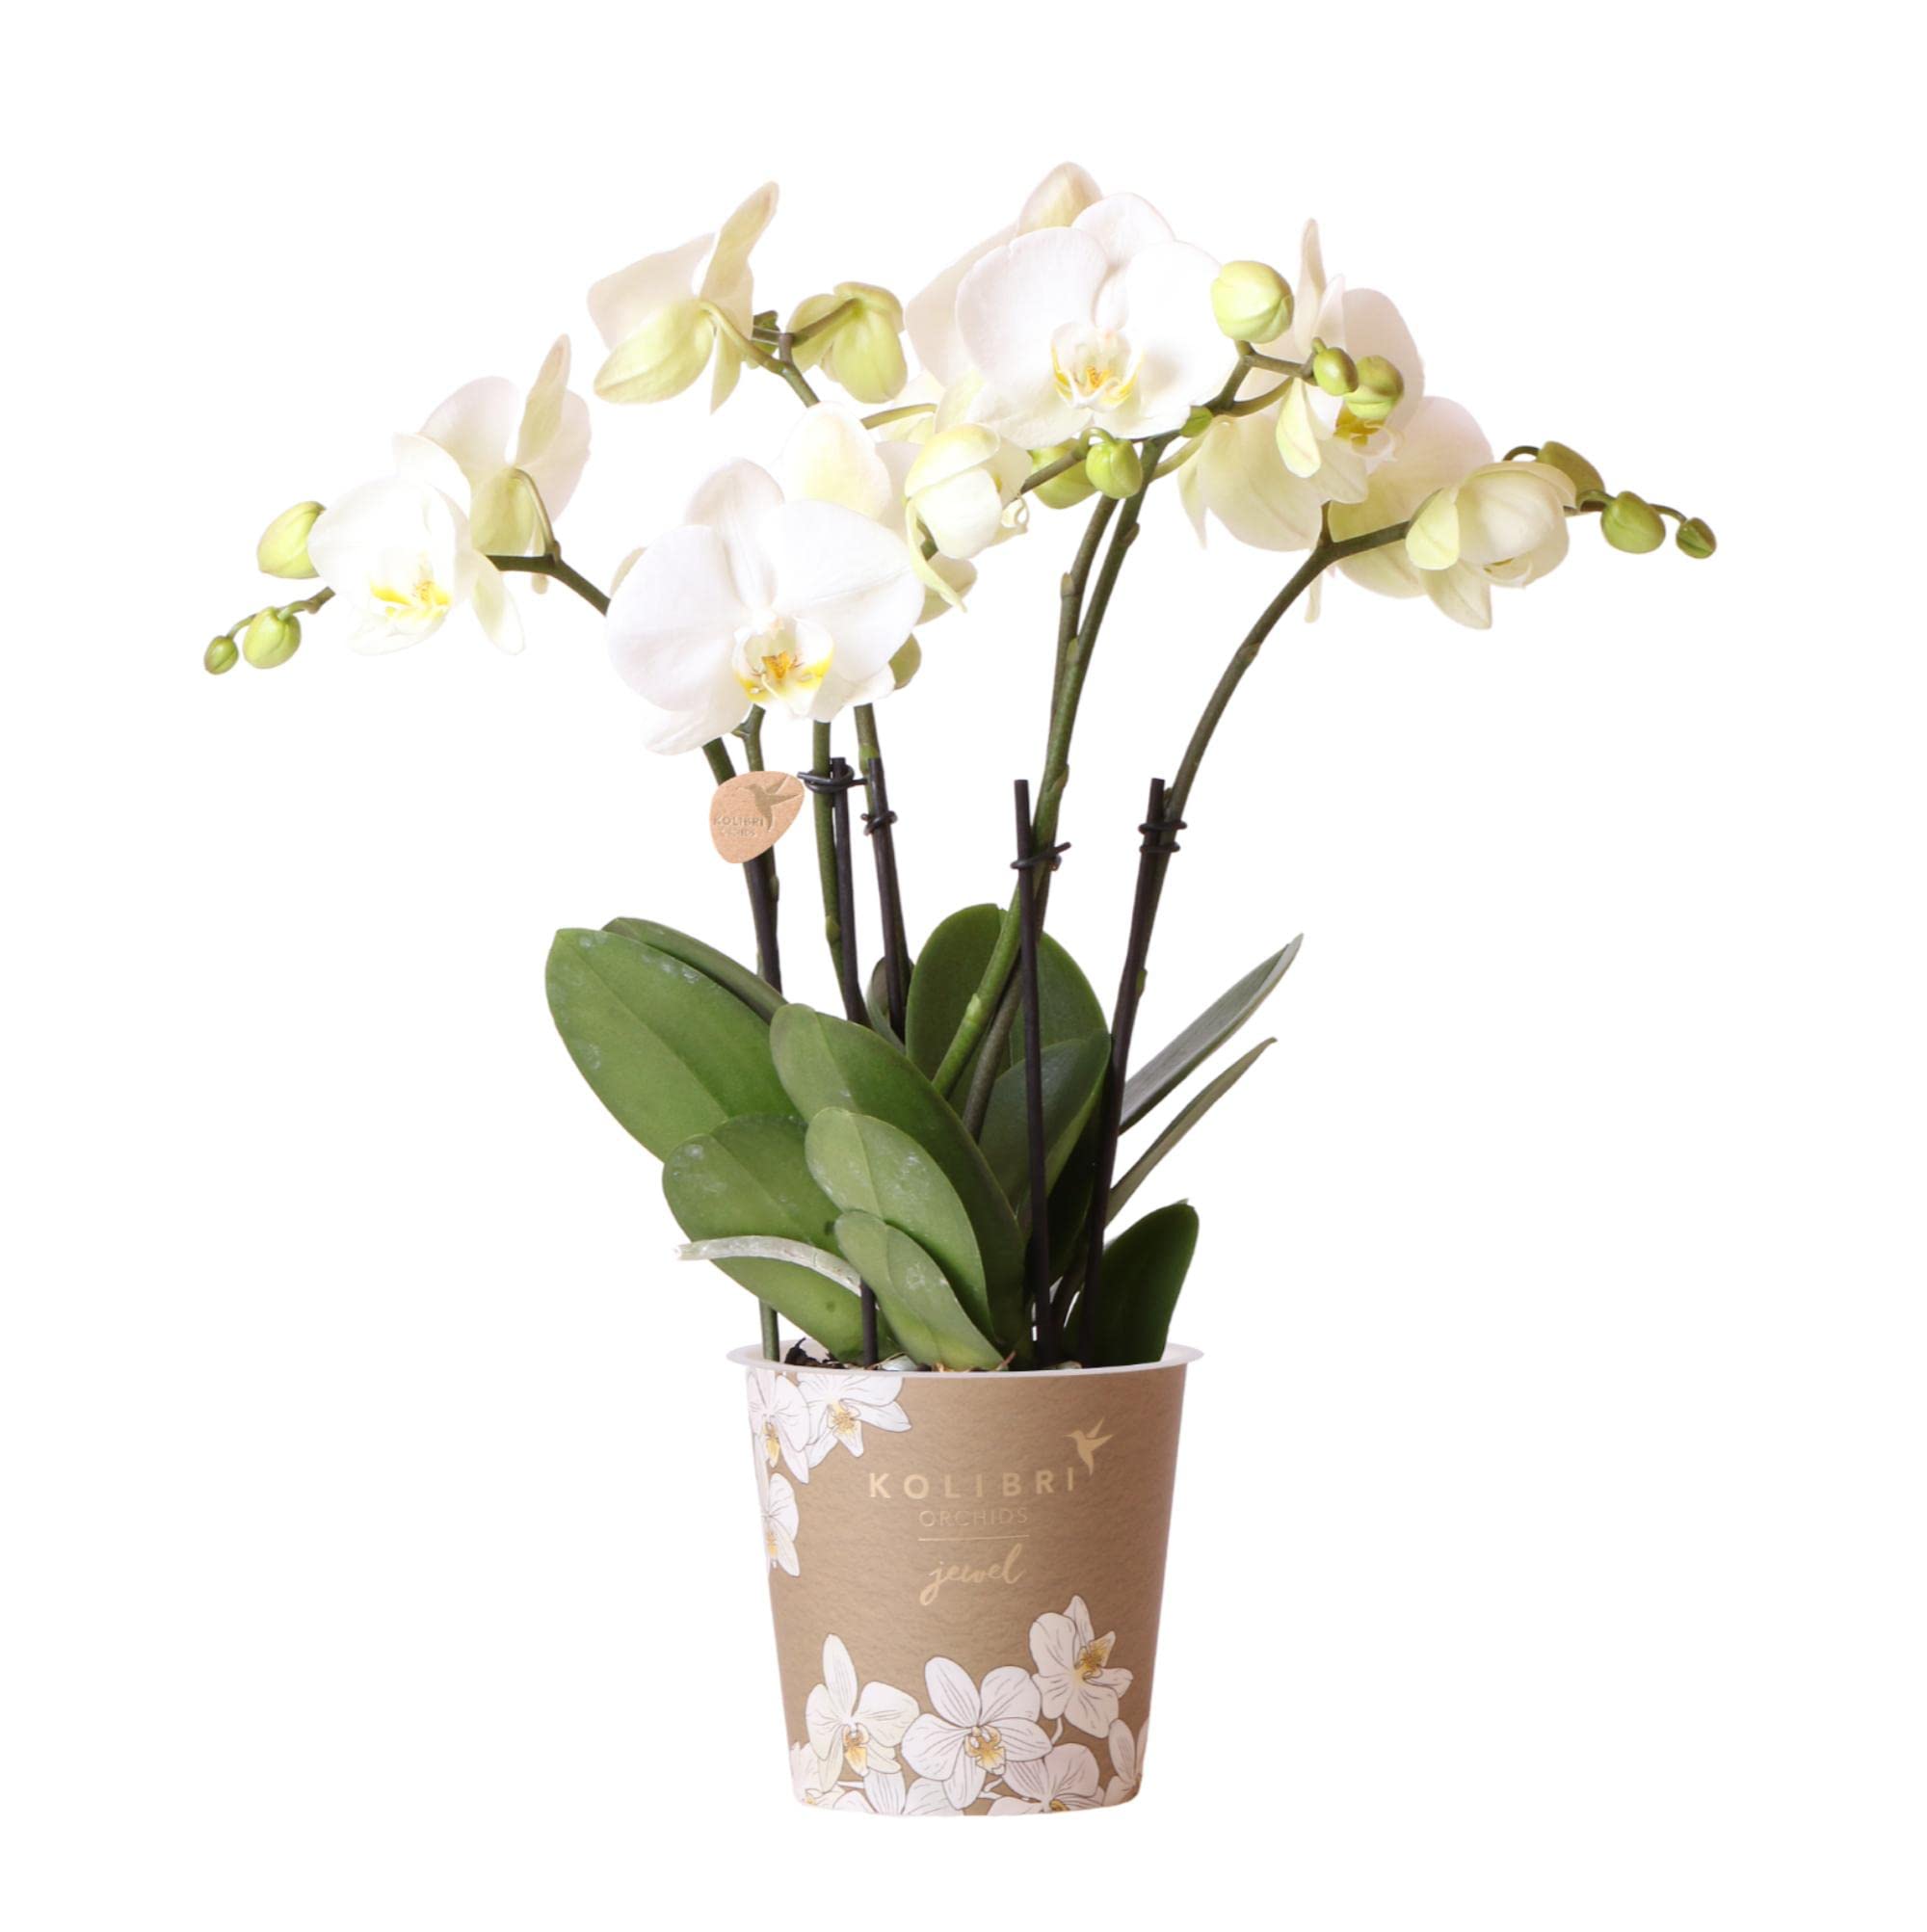 Kolibri Orchids | Weiße Phalaenopsis Orchidee Topfgröße - Jewel Ghent - Topfgröße Ø12cm | blühende Zimmerpflanze - frisch vom Züchter